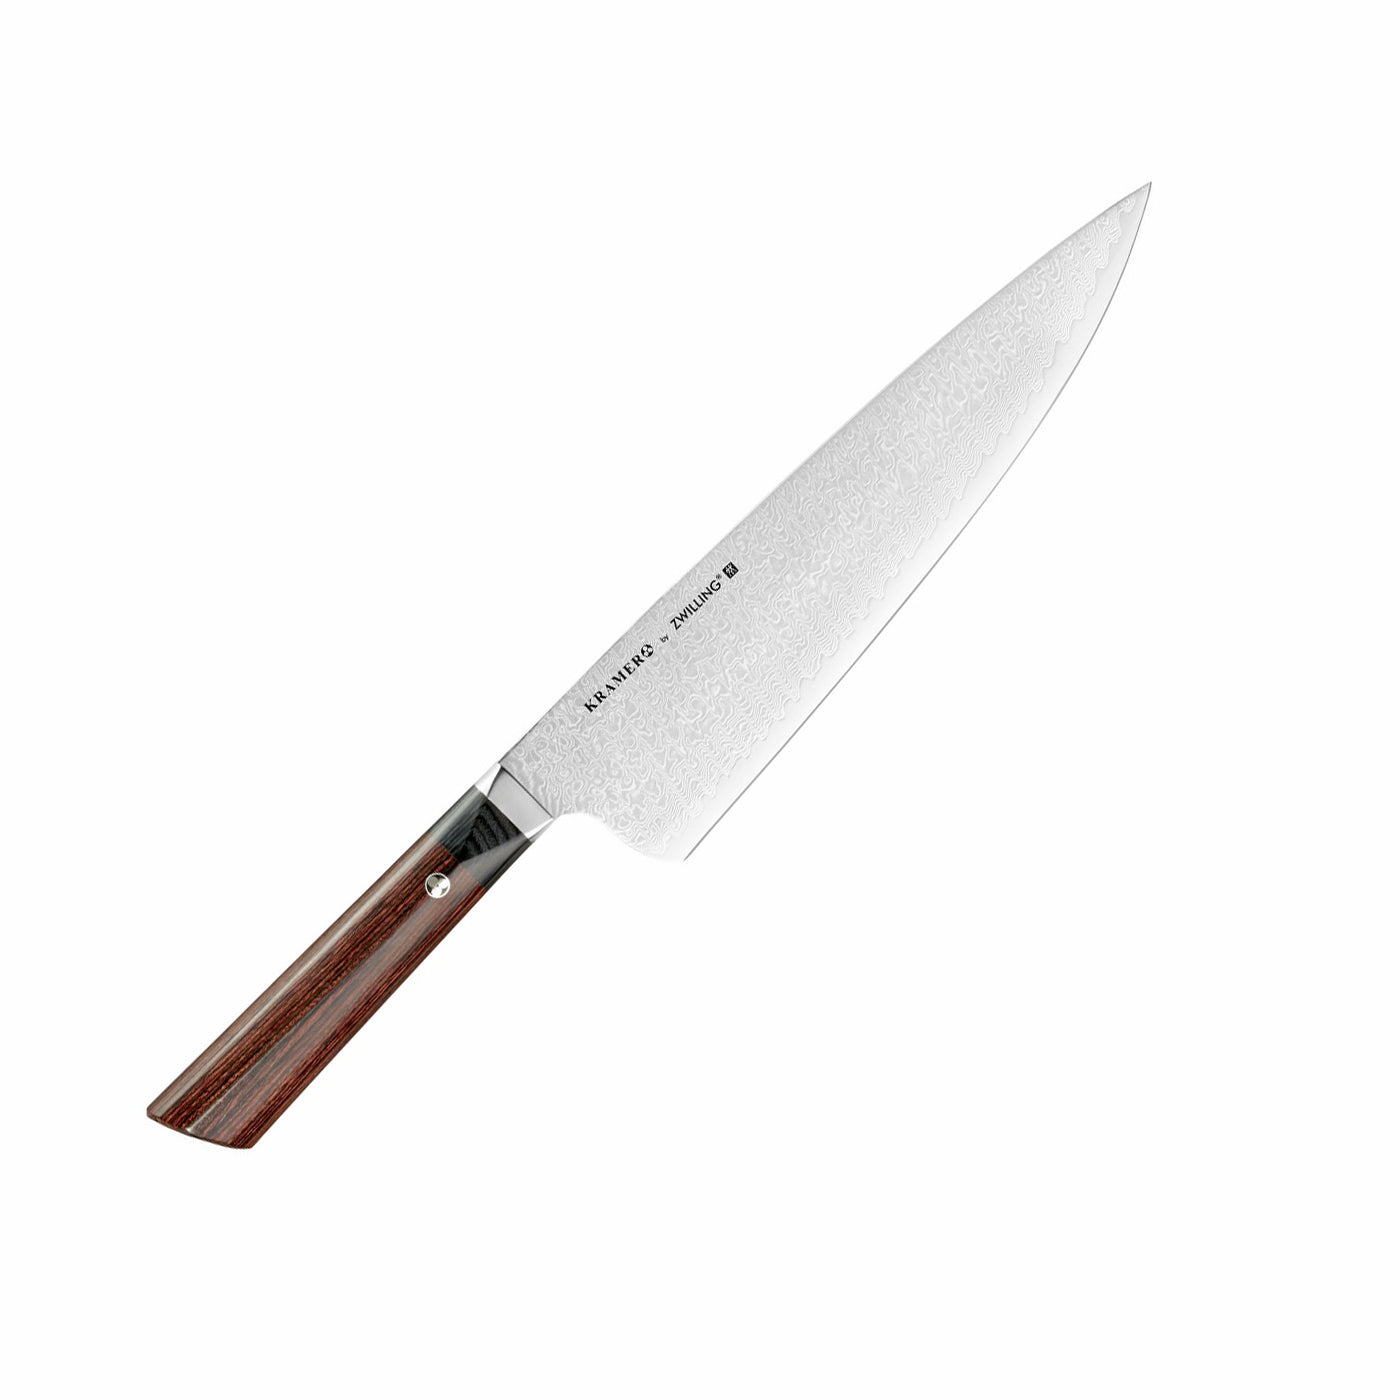 V-Edge Knife Sharpener by Zwilling J.A. Henckels at Swiss Knife Shop